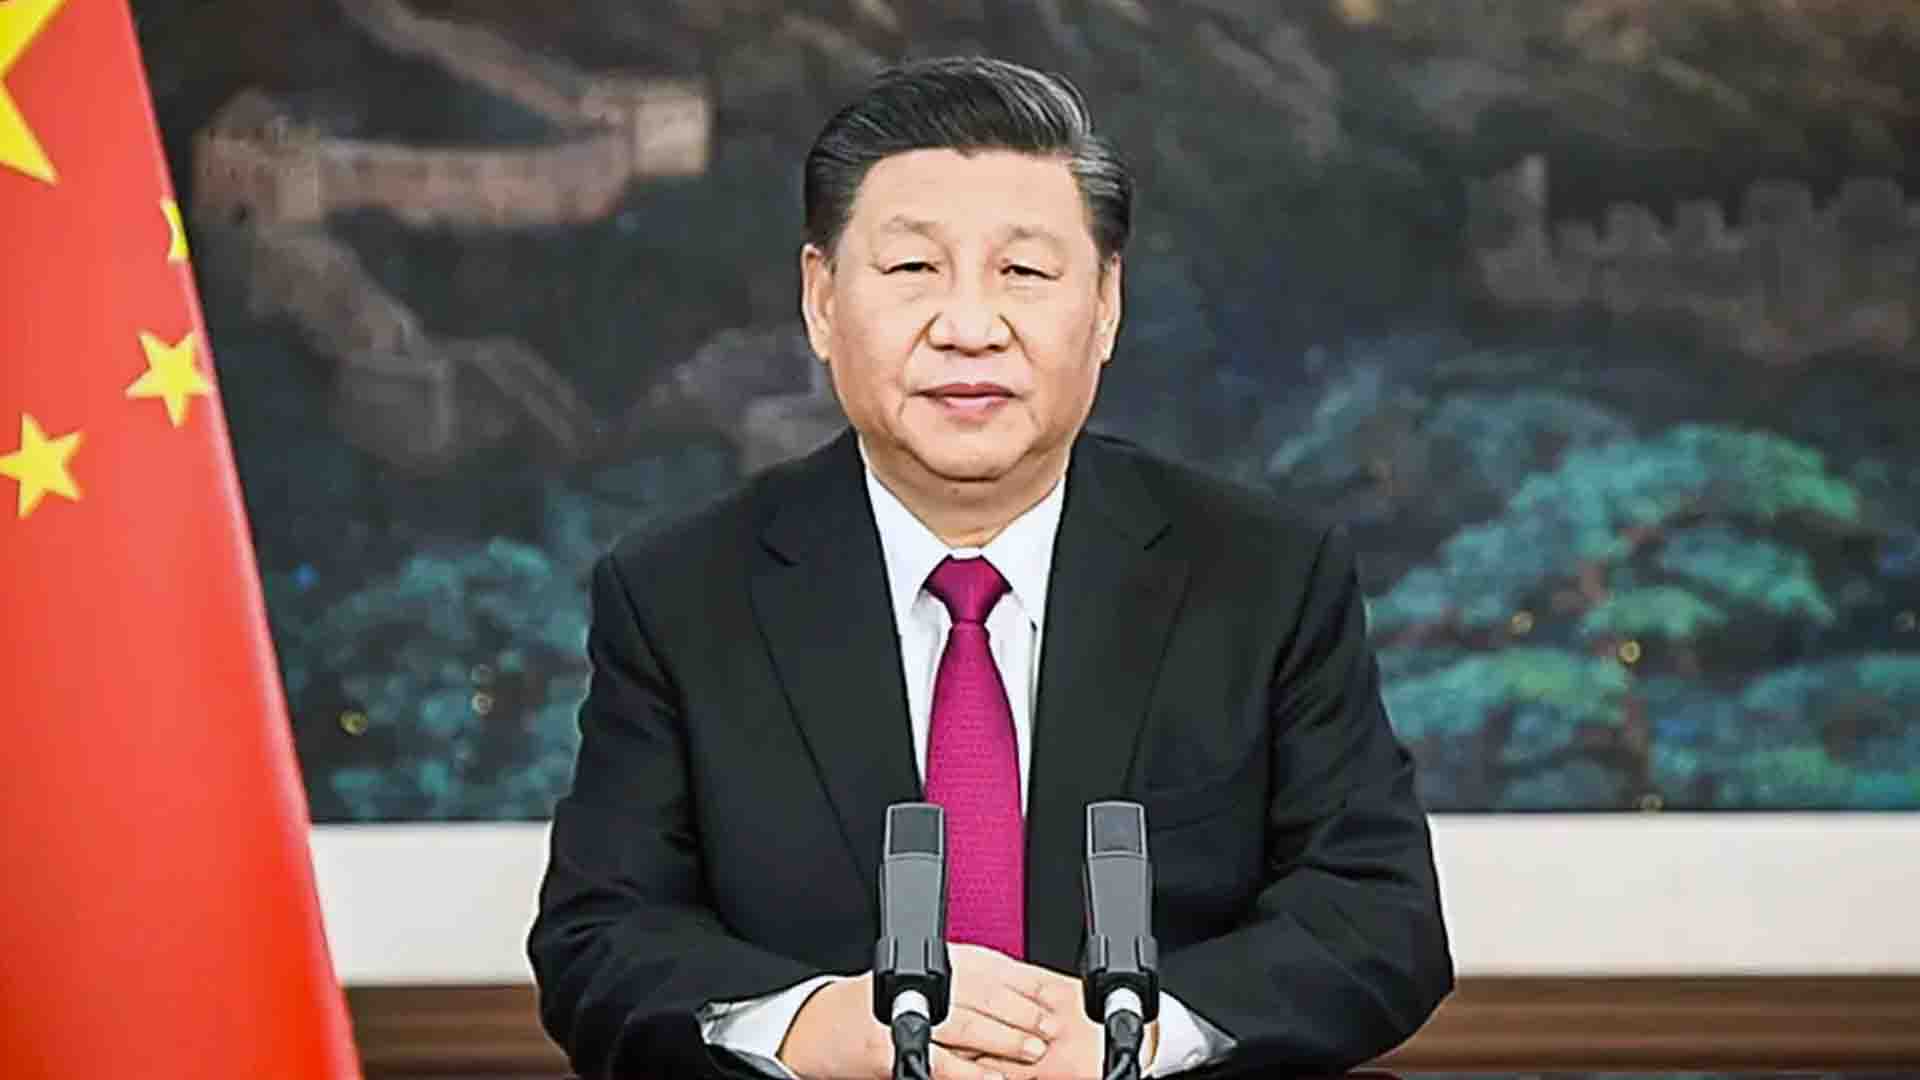 Antes da visita de Pelosi em Taiwan, Xi Jinping alertou Biden que ‘não era hora para crise’